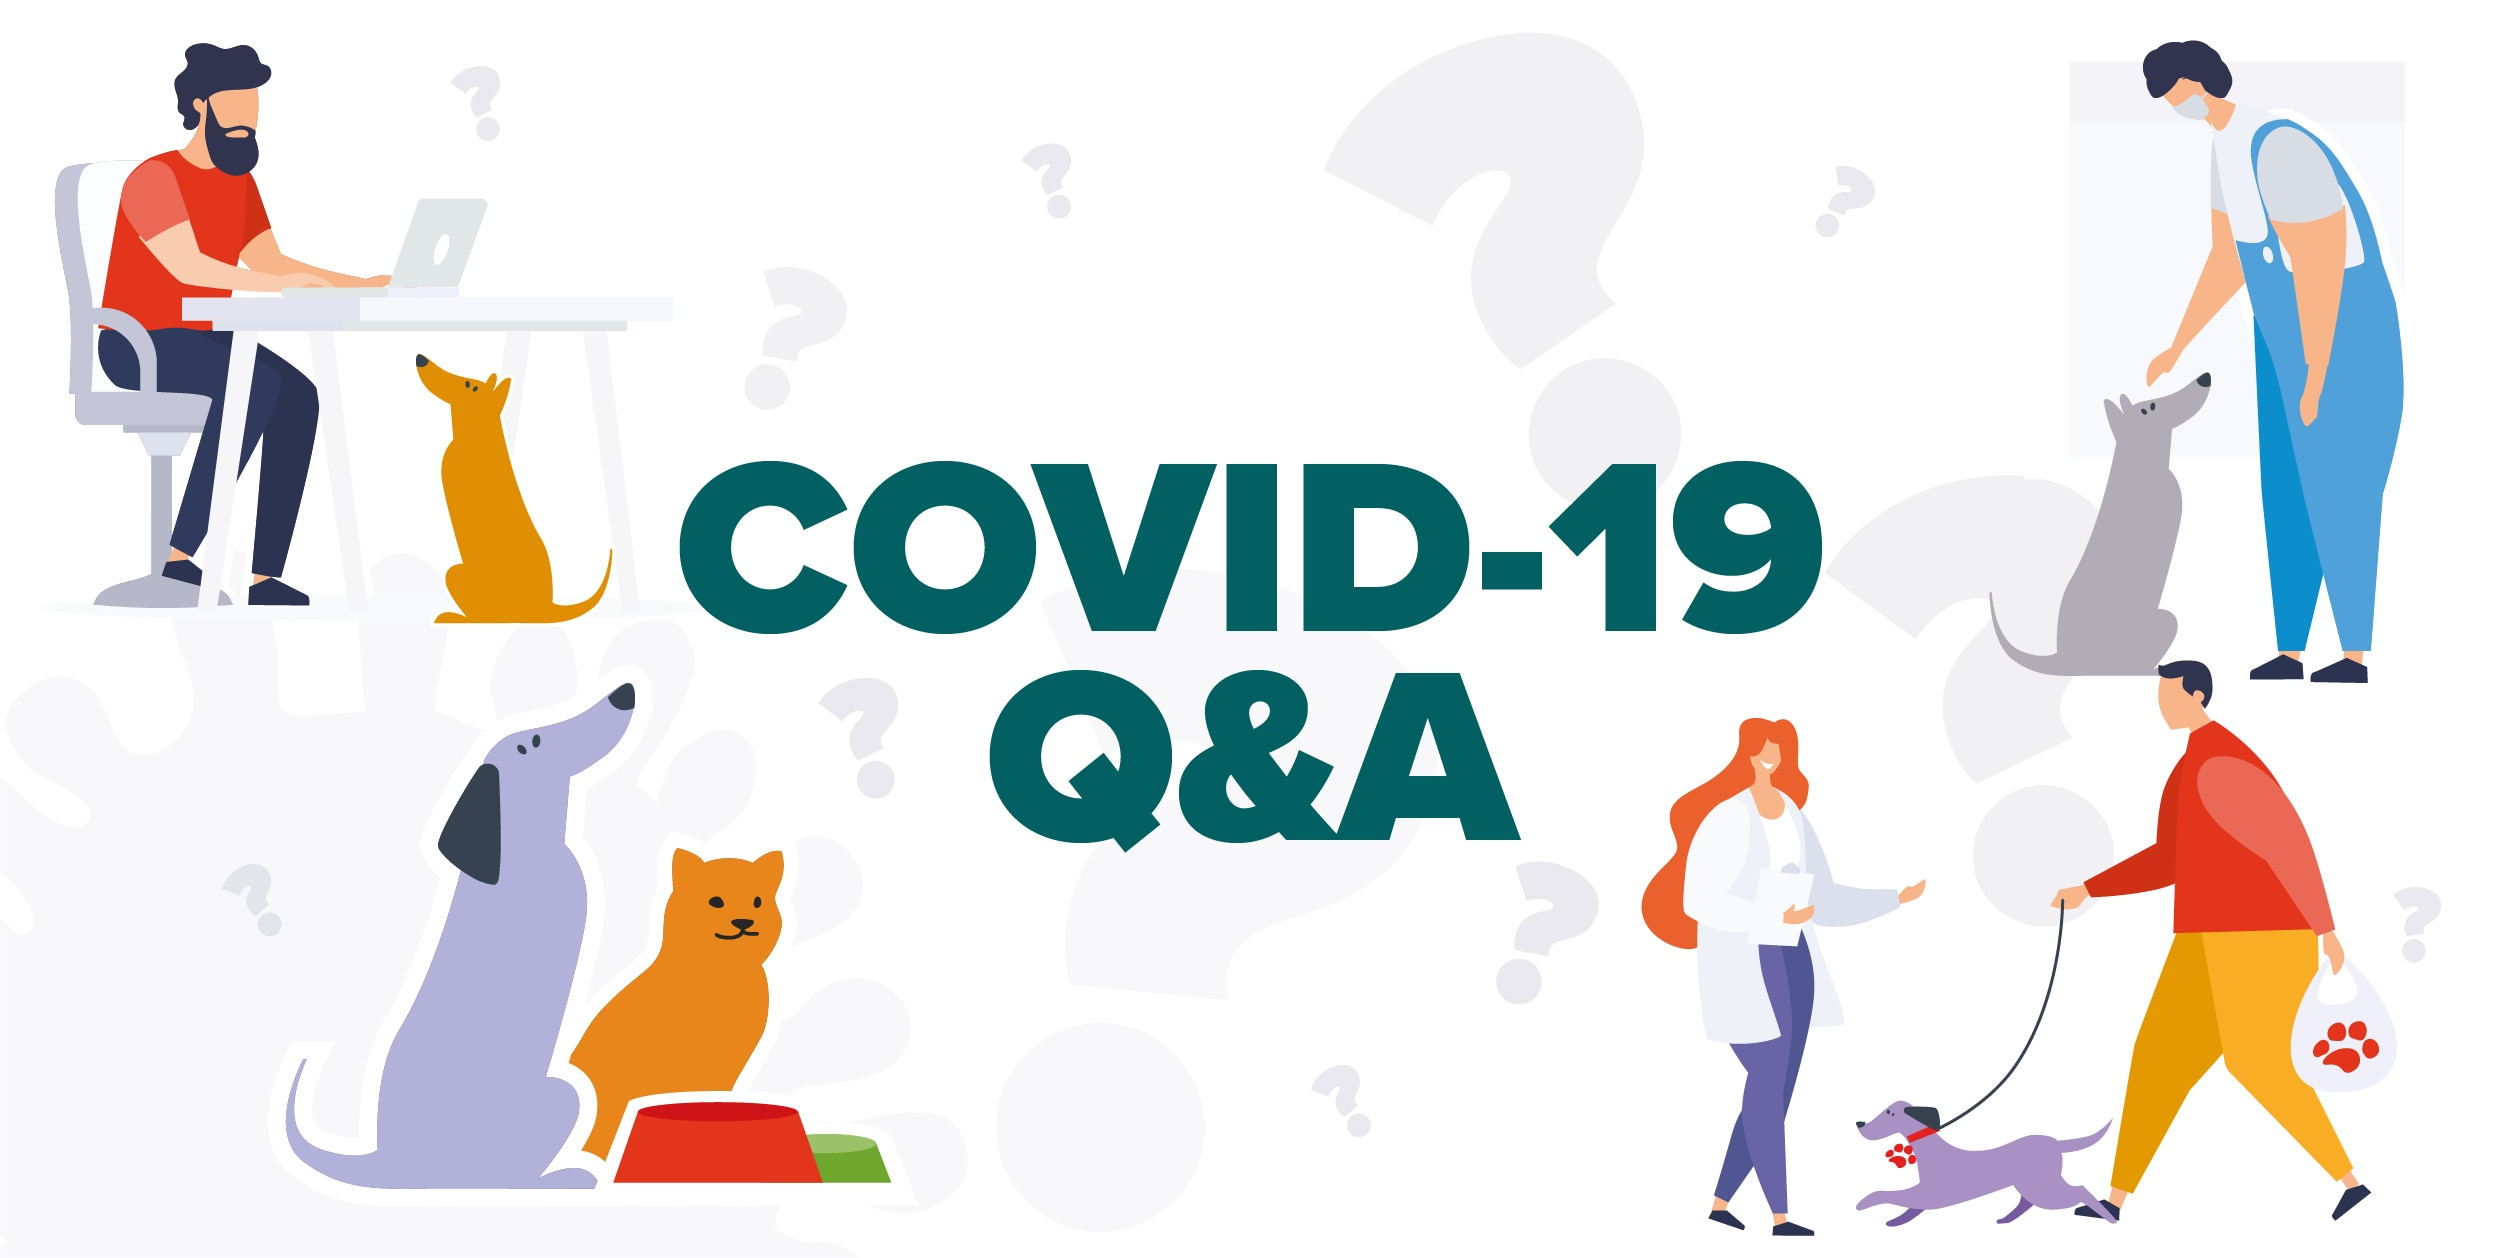 Covid-19: Q&A